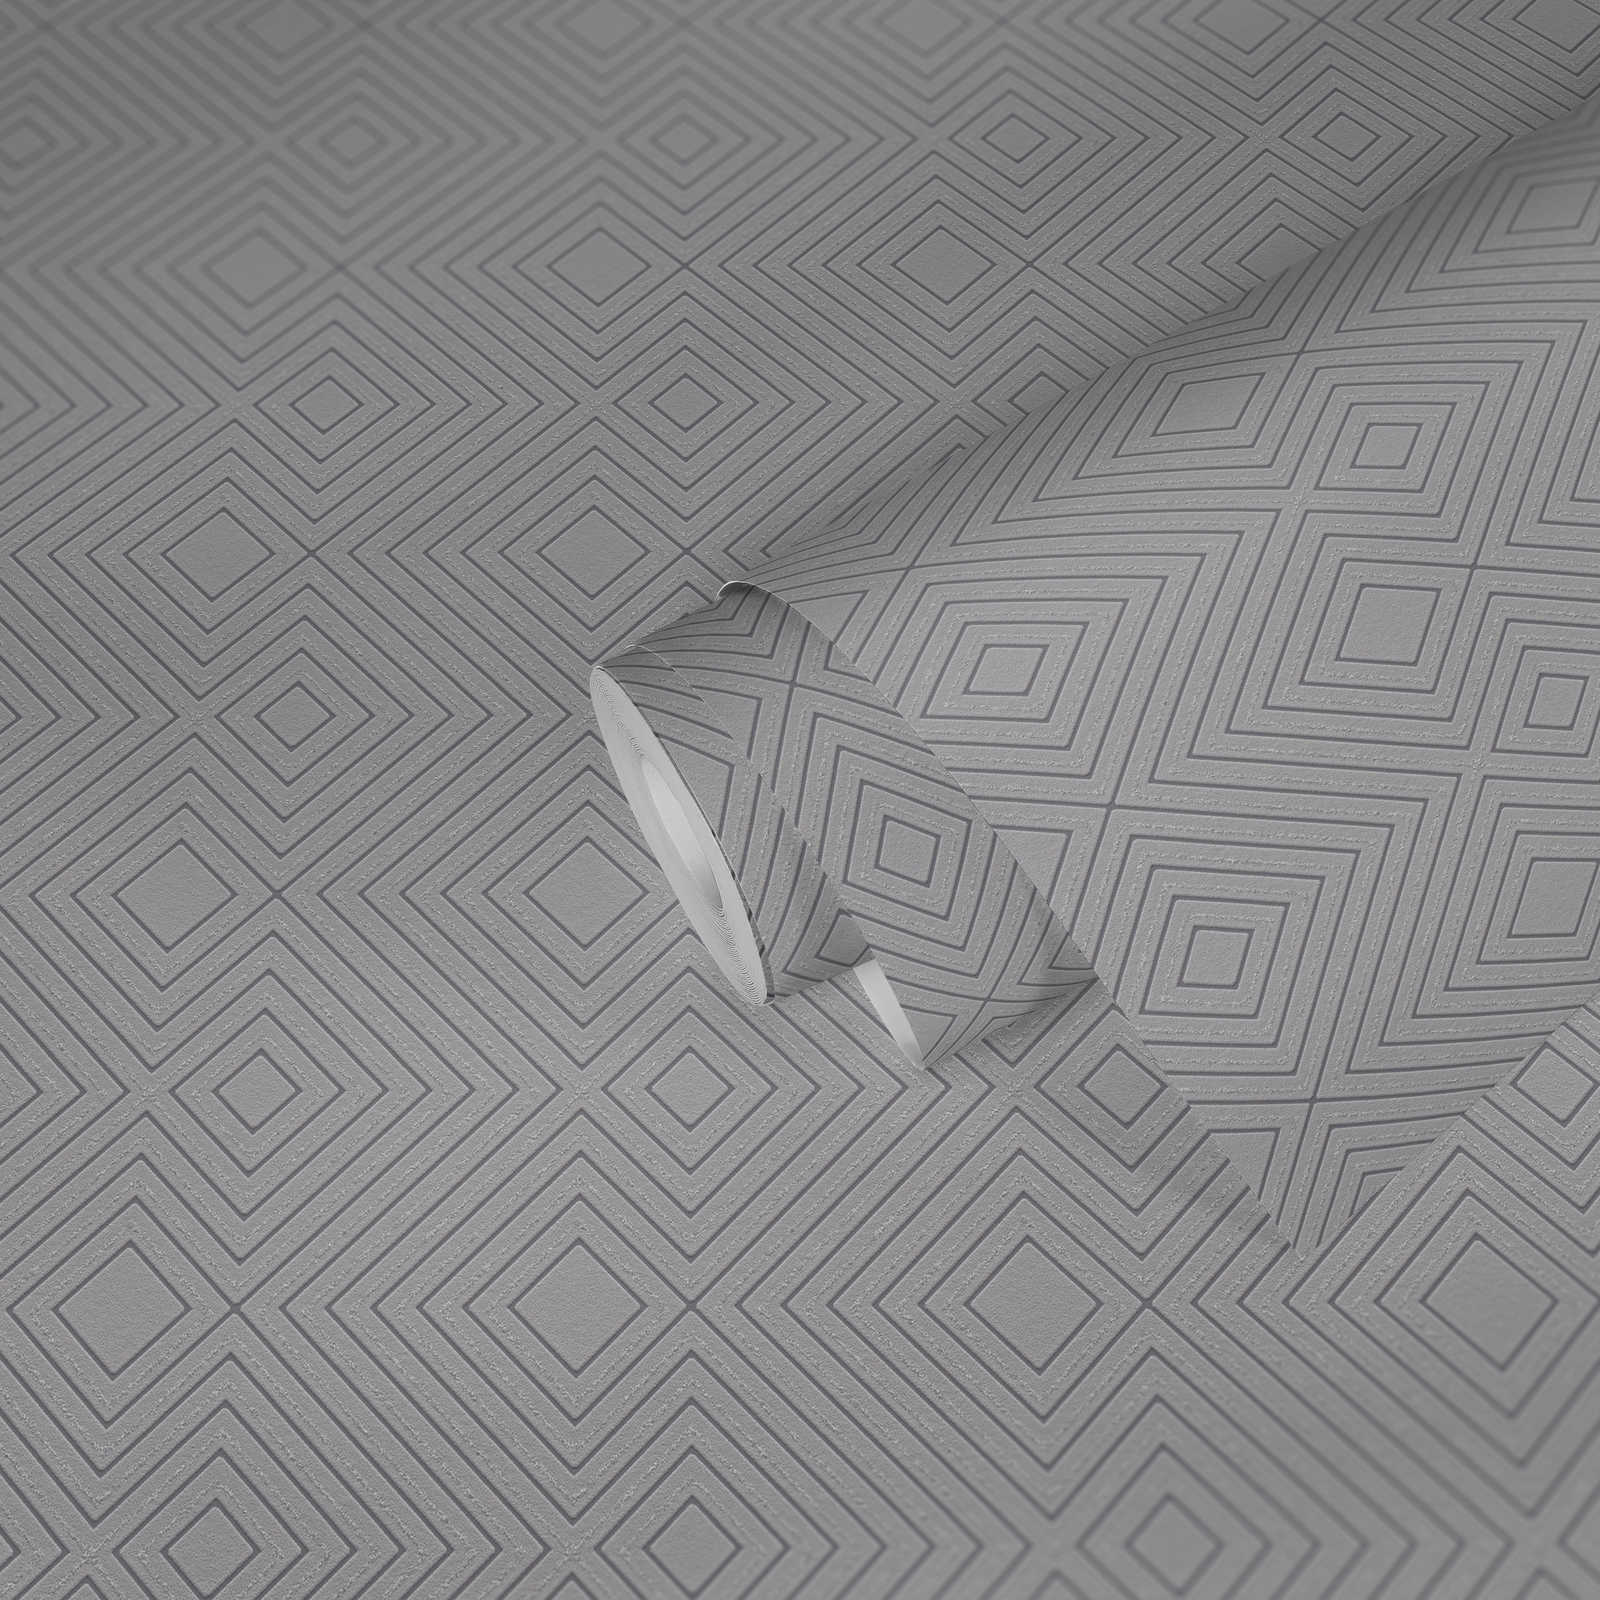             Geometrische Mustertapete mit Glanz-Effekt – Braun, Metallic
        